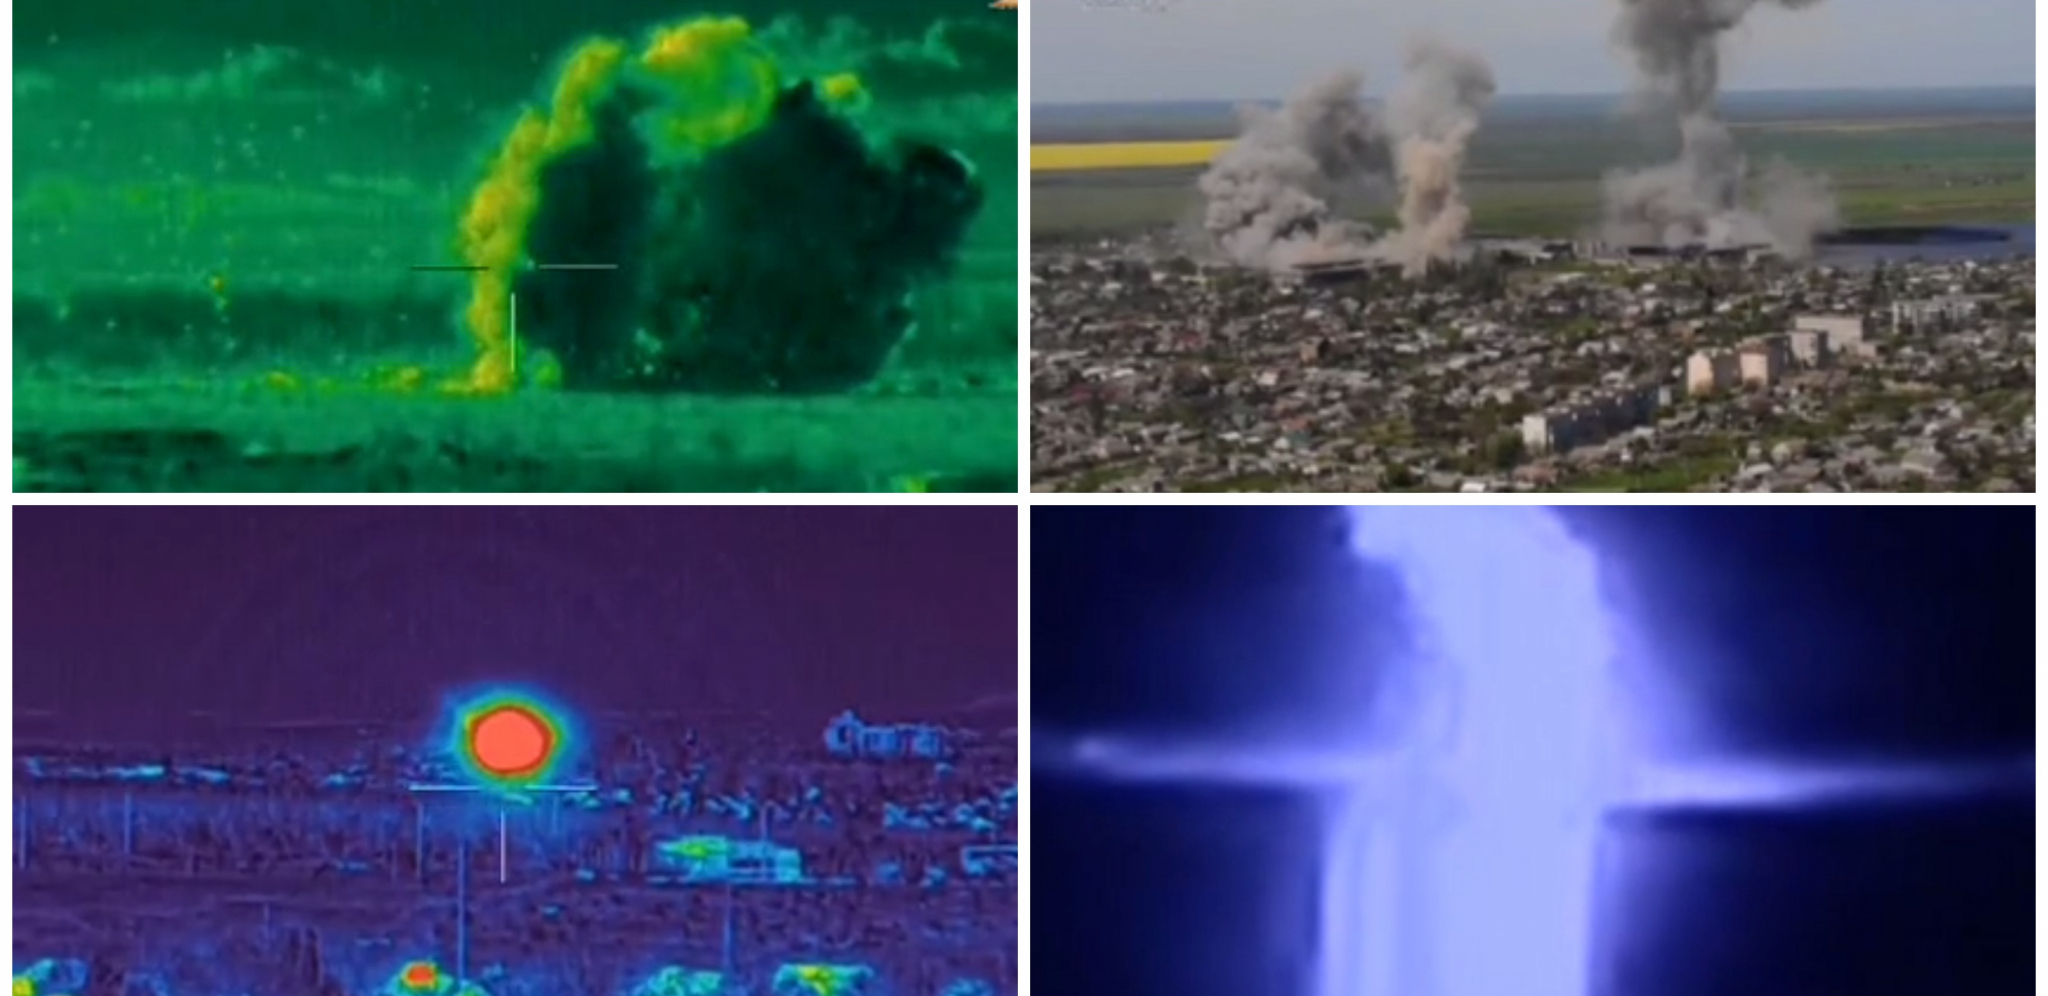 MOSKVA SPREMA VELIKU MOBILIZACIJU Rosatom: Napad dronom u blizini nuklarke Zaporožje (FOTO/VIDEO)